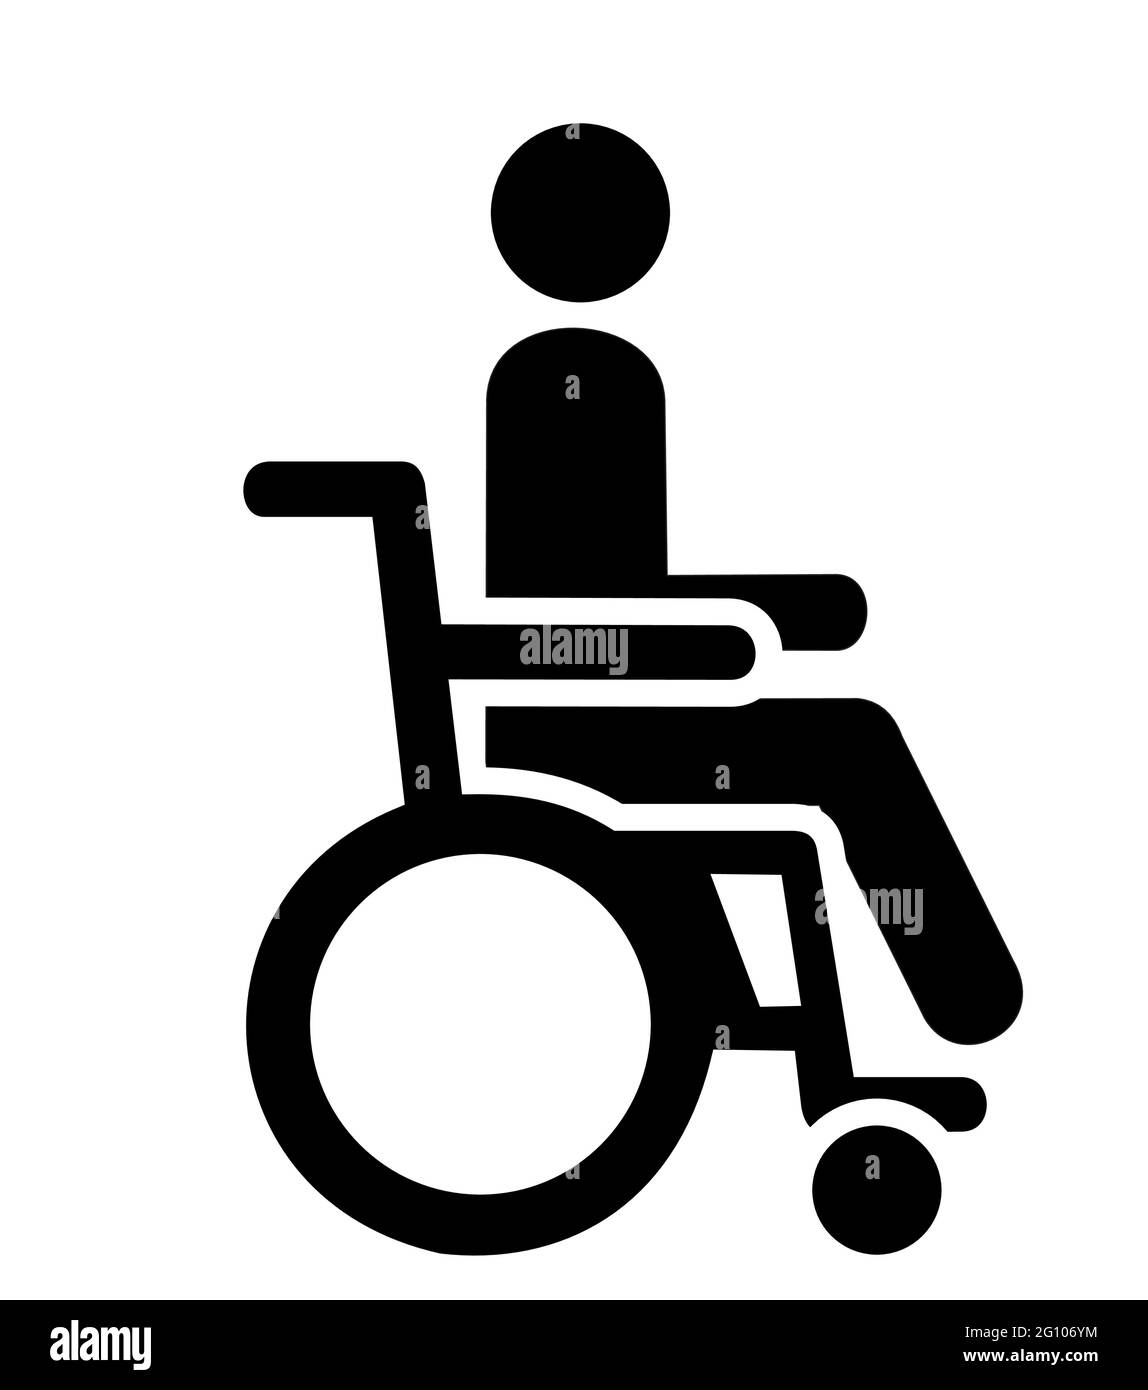 Un vecteur de fauteuil roulant en noir et blanc isolé fait pour des signes comme un logo, une icône de fauteuil roulant ou une silhouette. Illustration de Vecteur